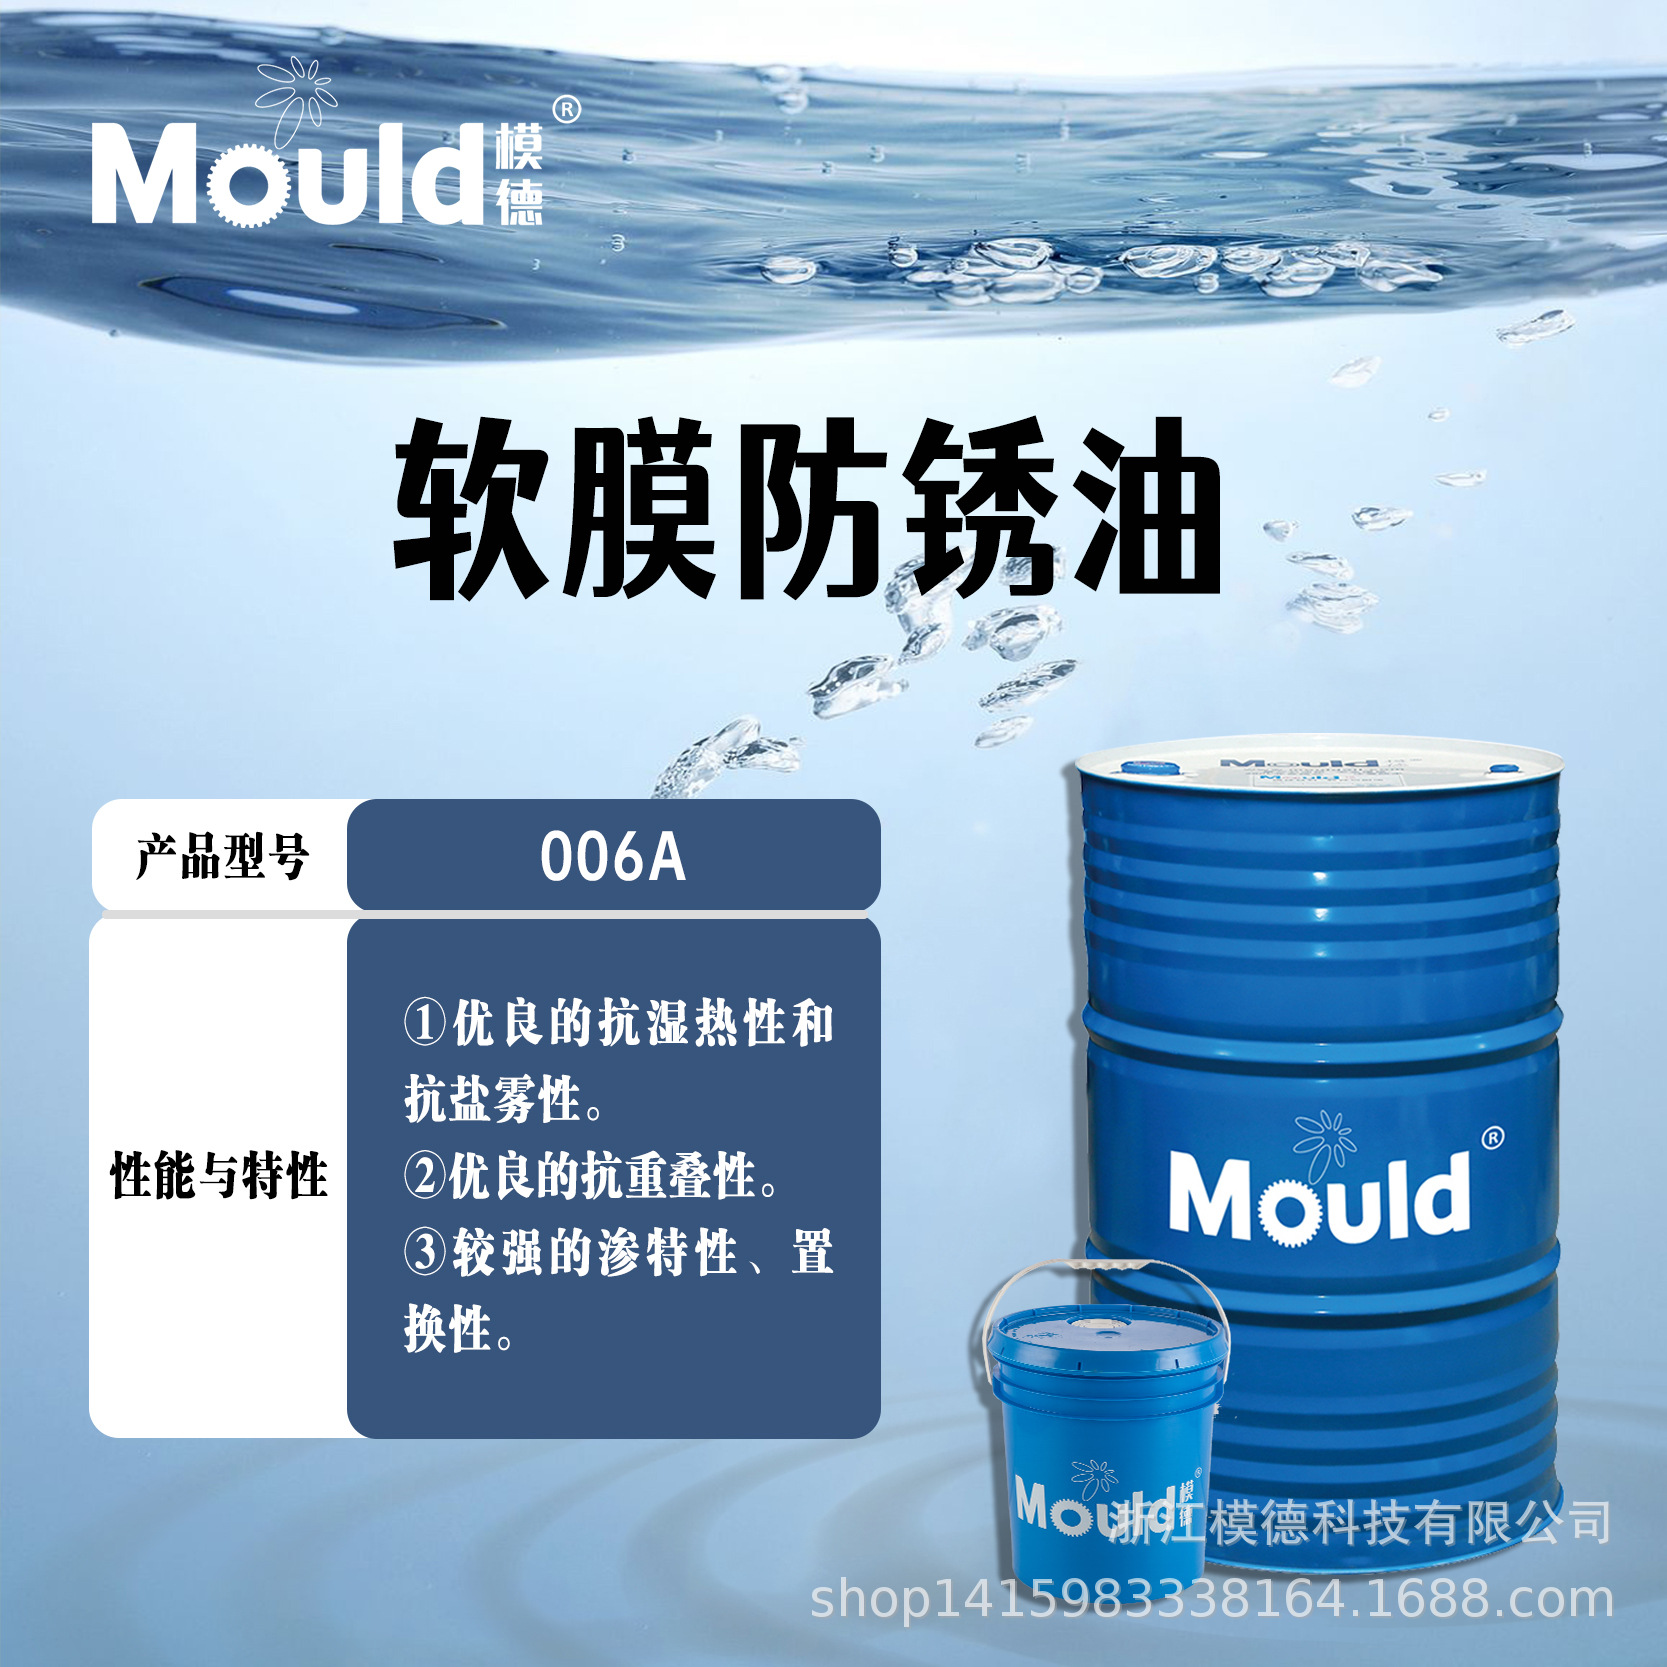 模德 软膜防锈油006A  适用于黑色金属的中短期封存防锈